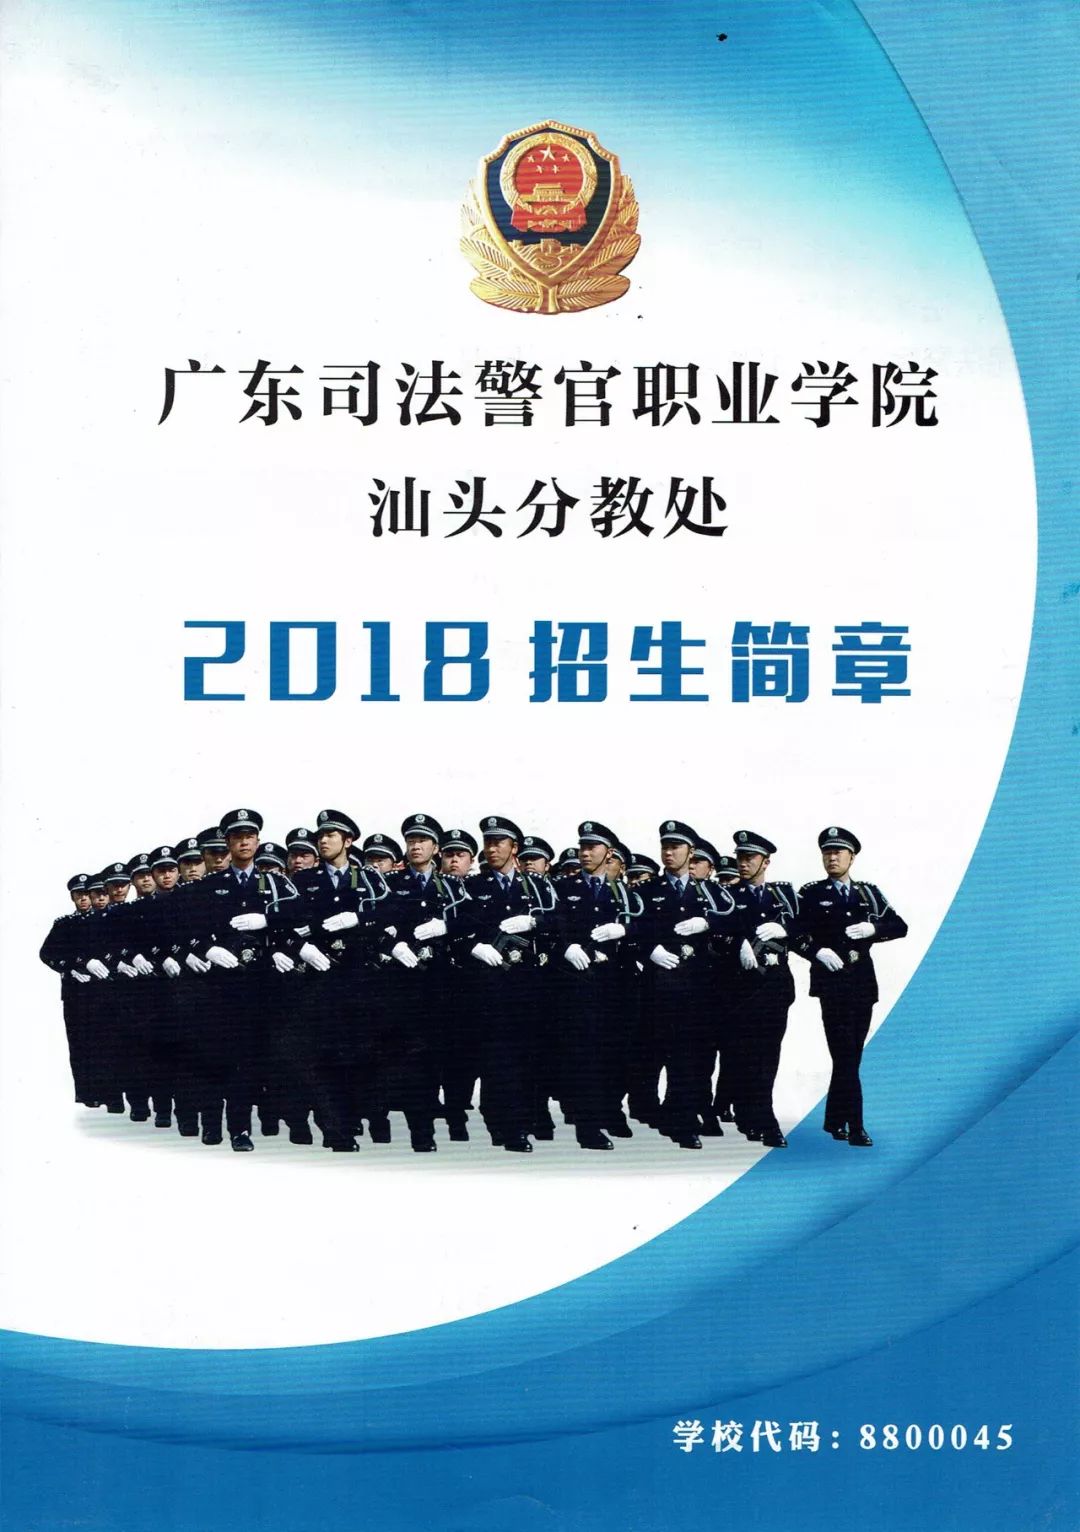 广东司法警官职业学院汕头分教处2018招生简章